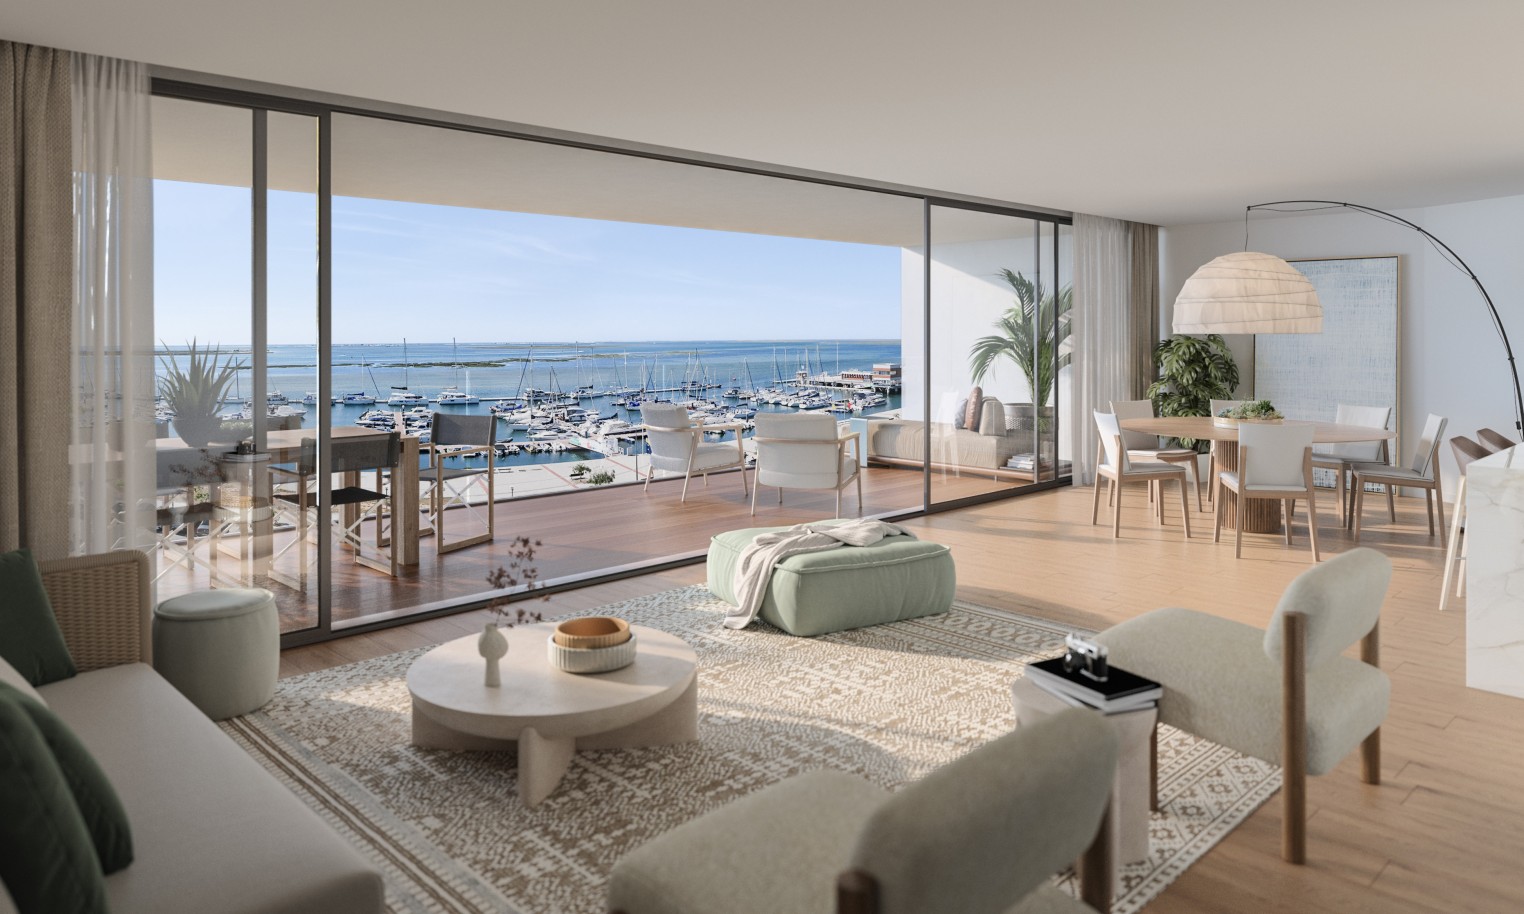 Pisos nuevos con vistas al mar, 1, 2 y 3 dormitorios, en venta en Olhão, Algarve_243793